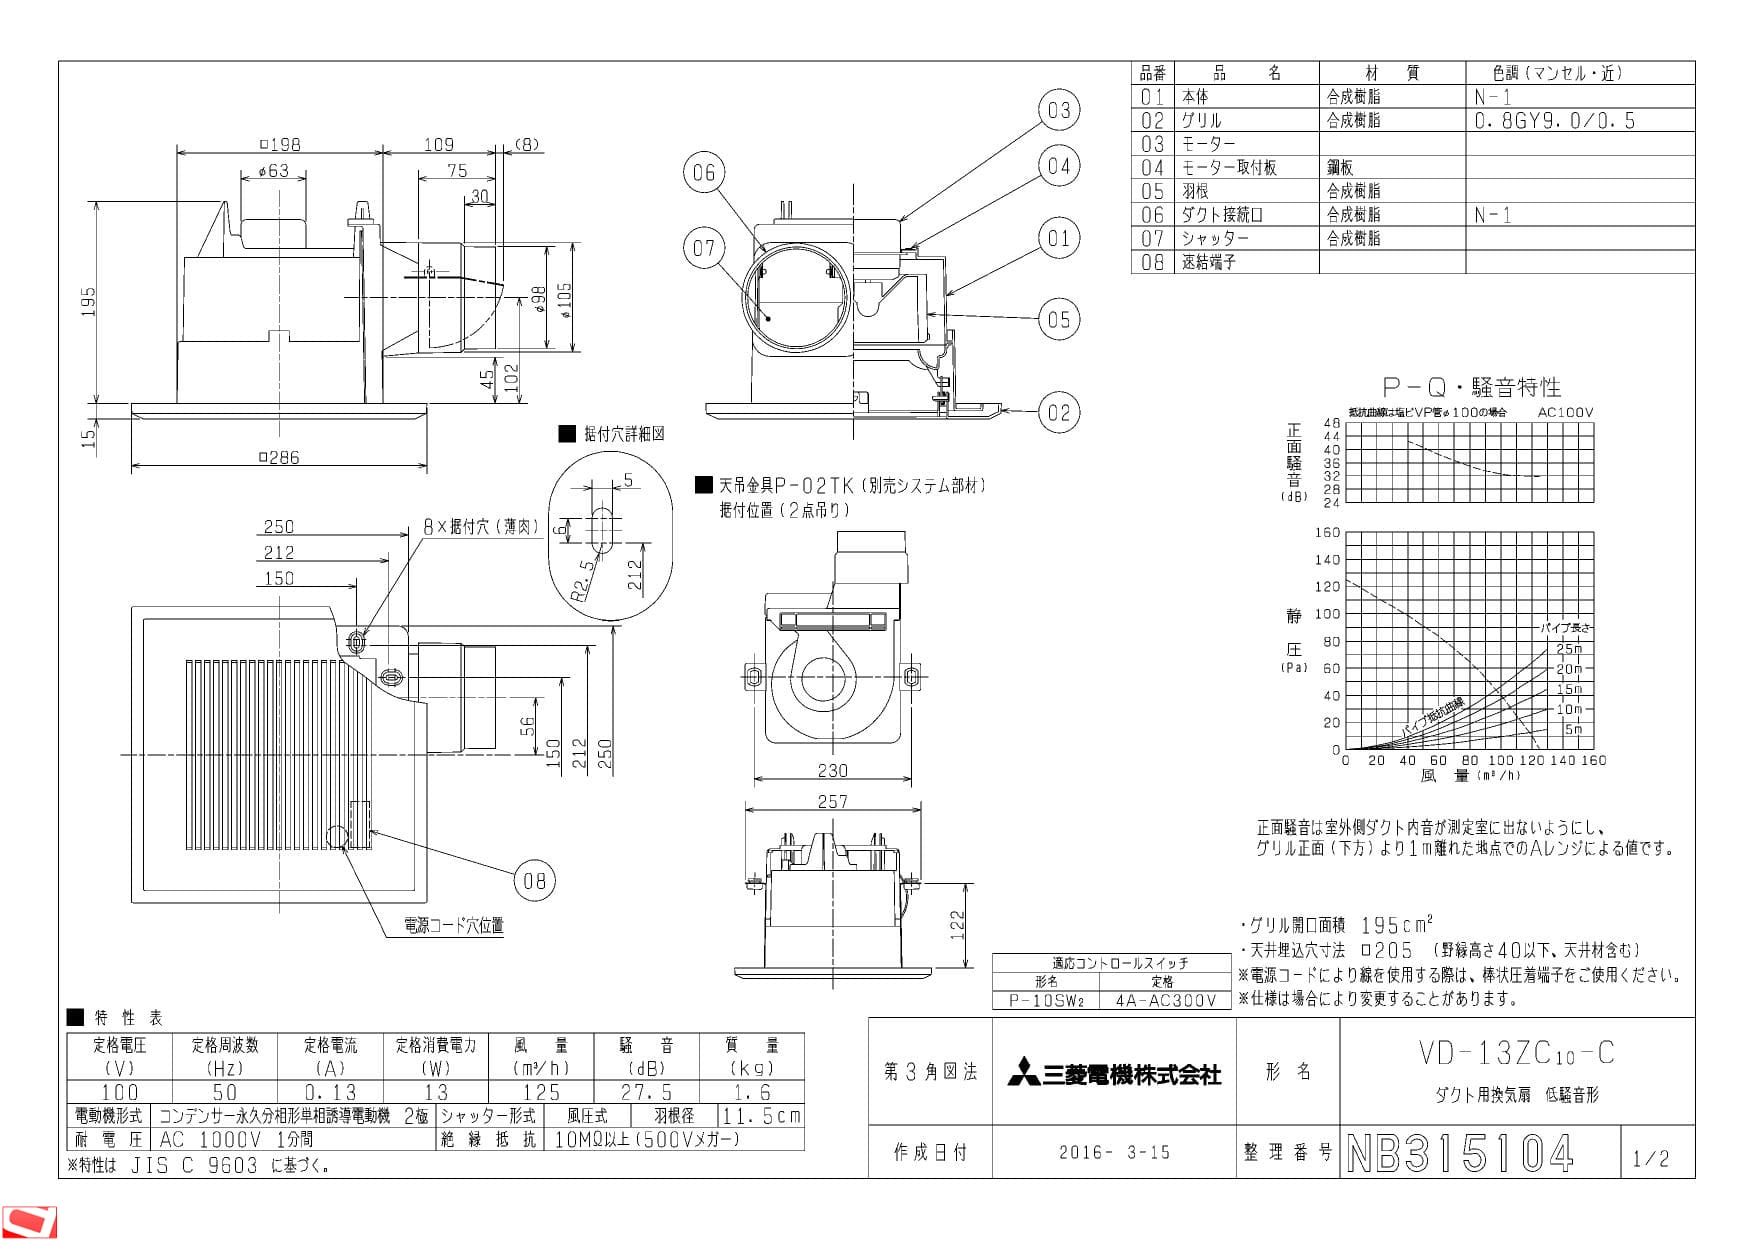 三菱電機 VD-13ZC10-C納入仕様図 | 通販 プロストア ダイレクト